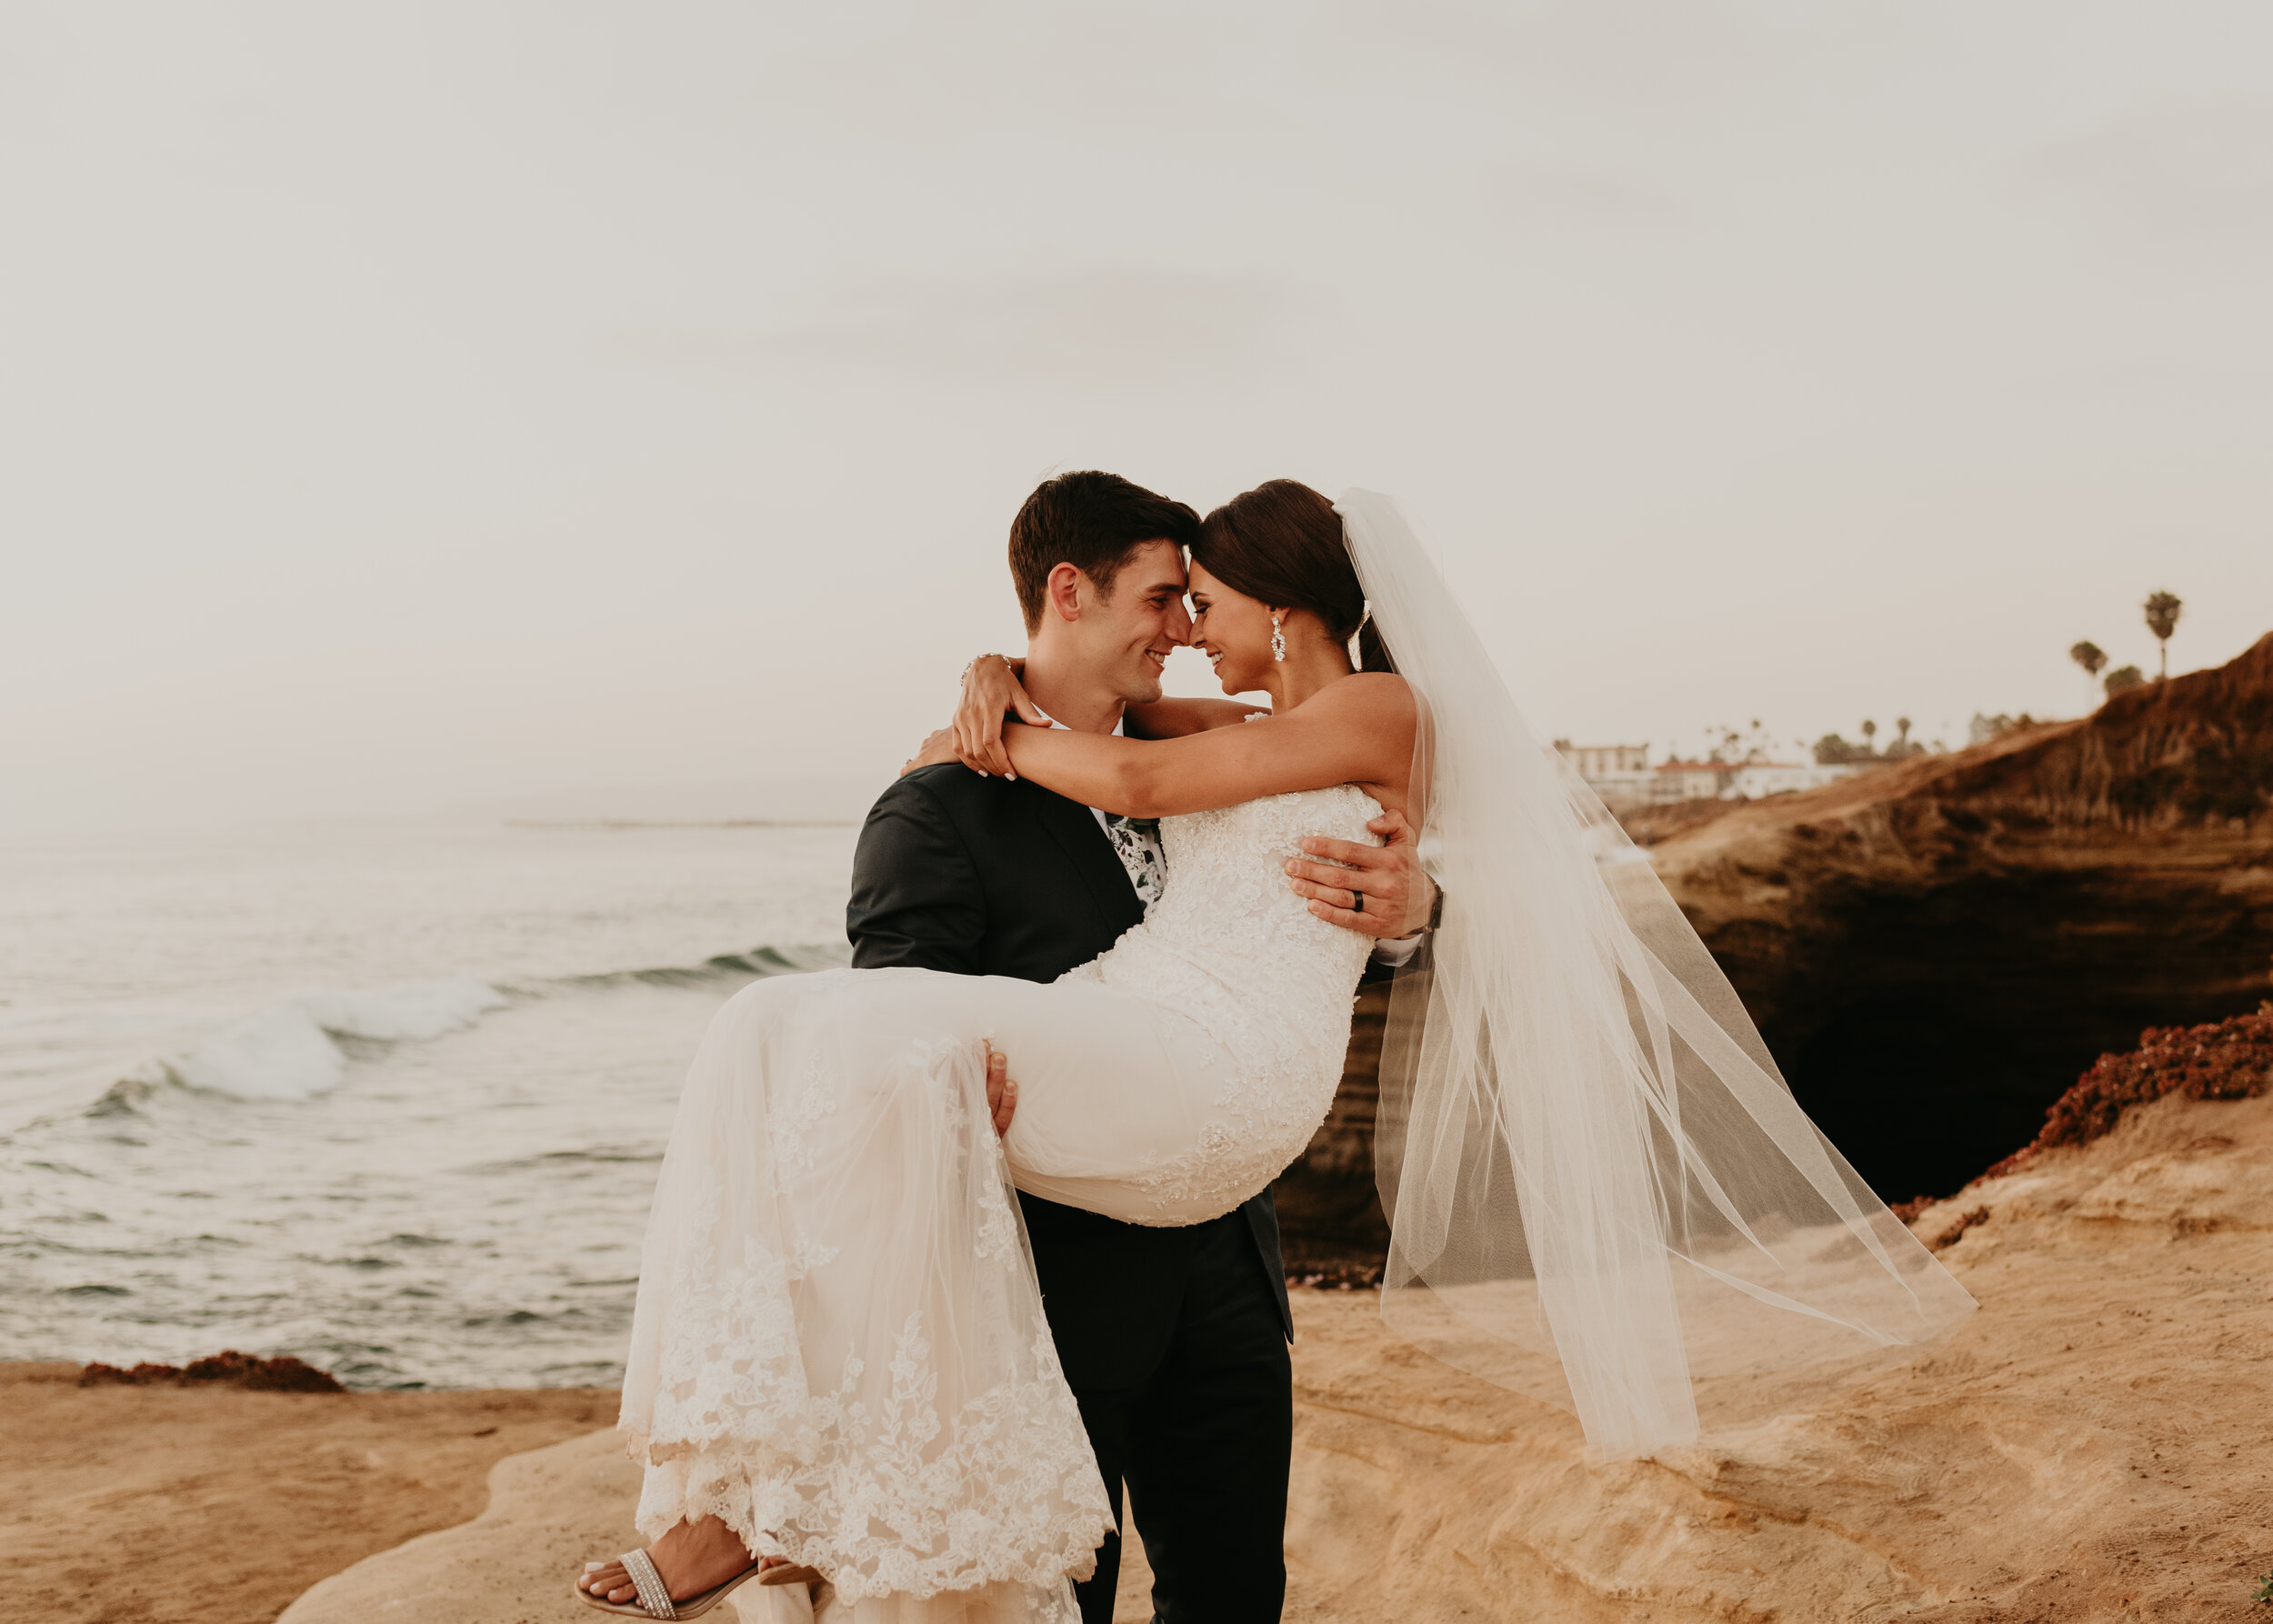 Sunset Cliffs Elopement in San Diego | Sunset Cliffs wedding portraits | San Diego Elopement Photographer | Southern California elopement photographer | couple eloping in san diego | beach elopement 